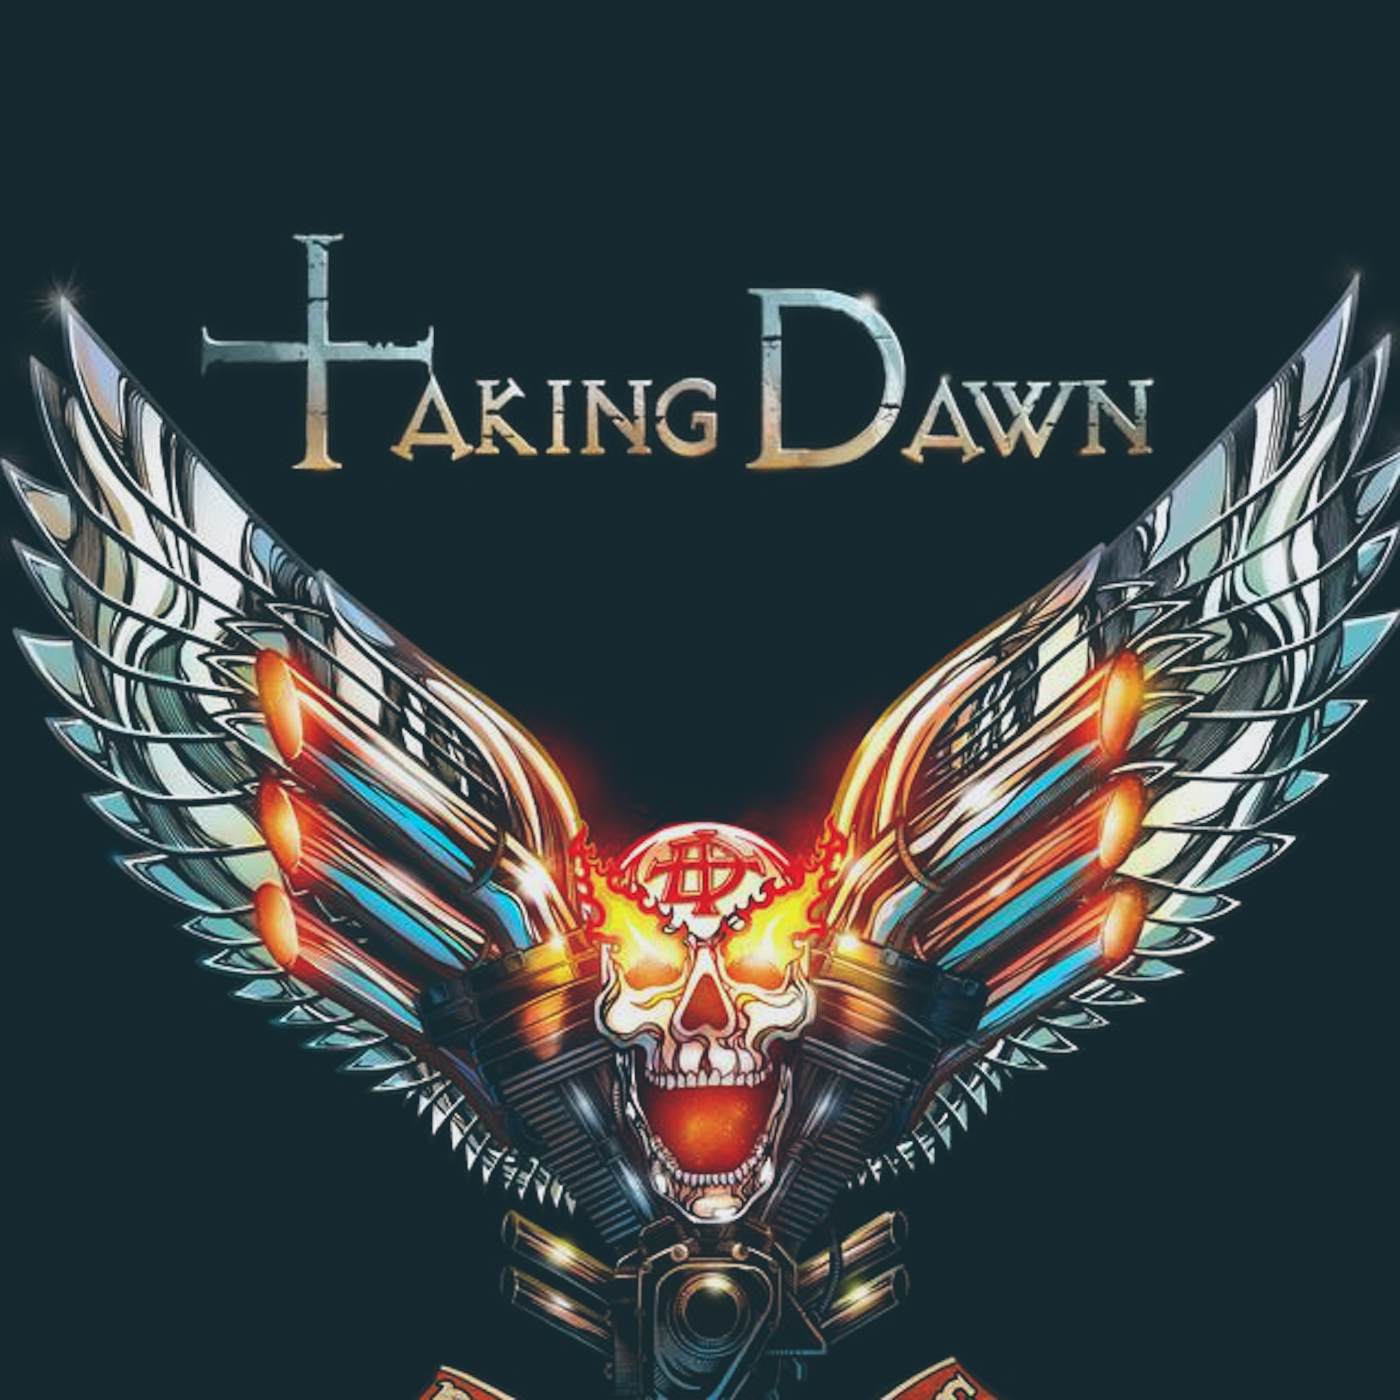 Taking Dawn